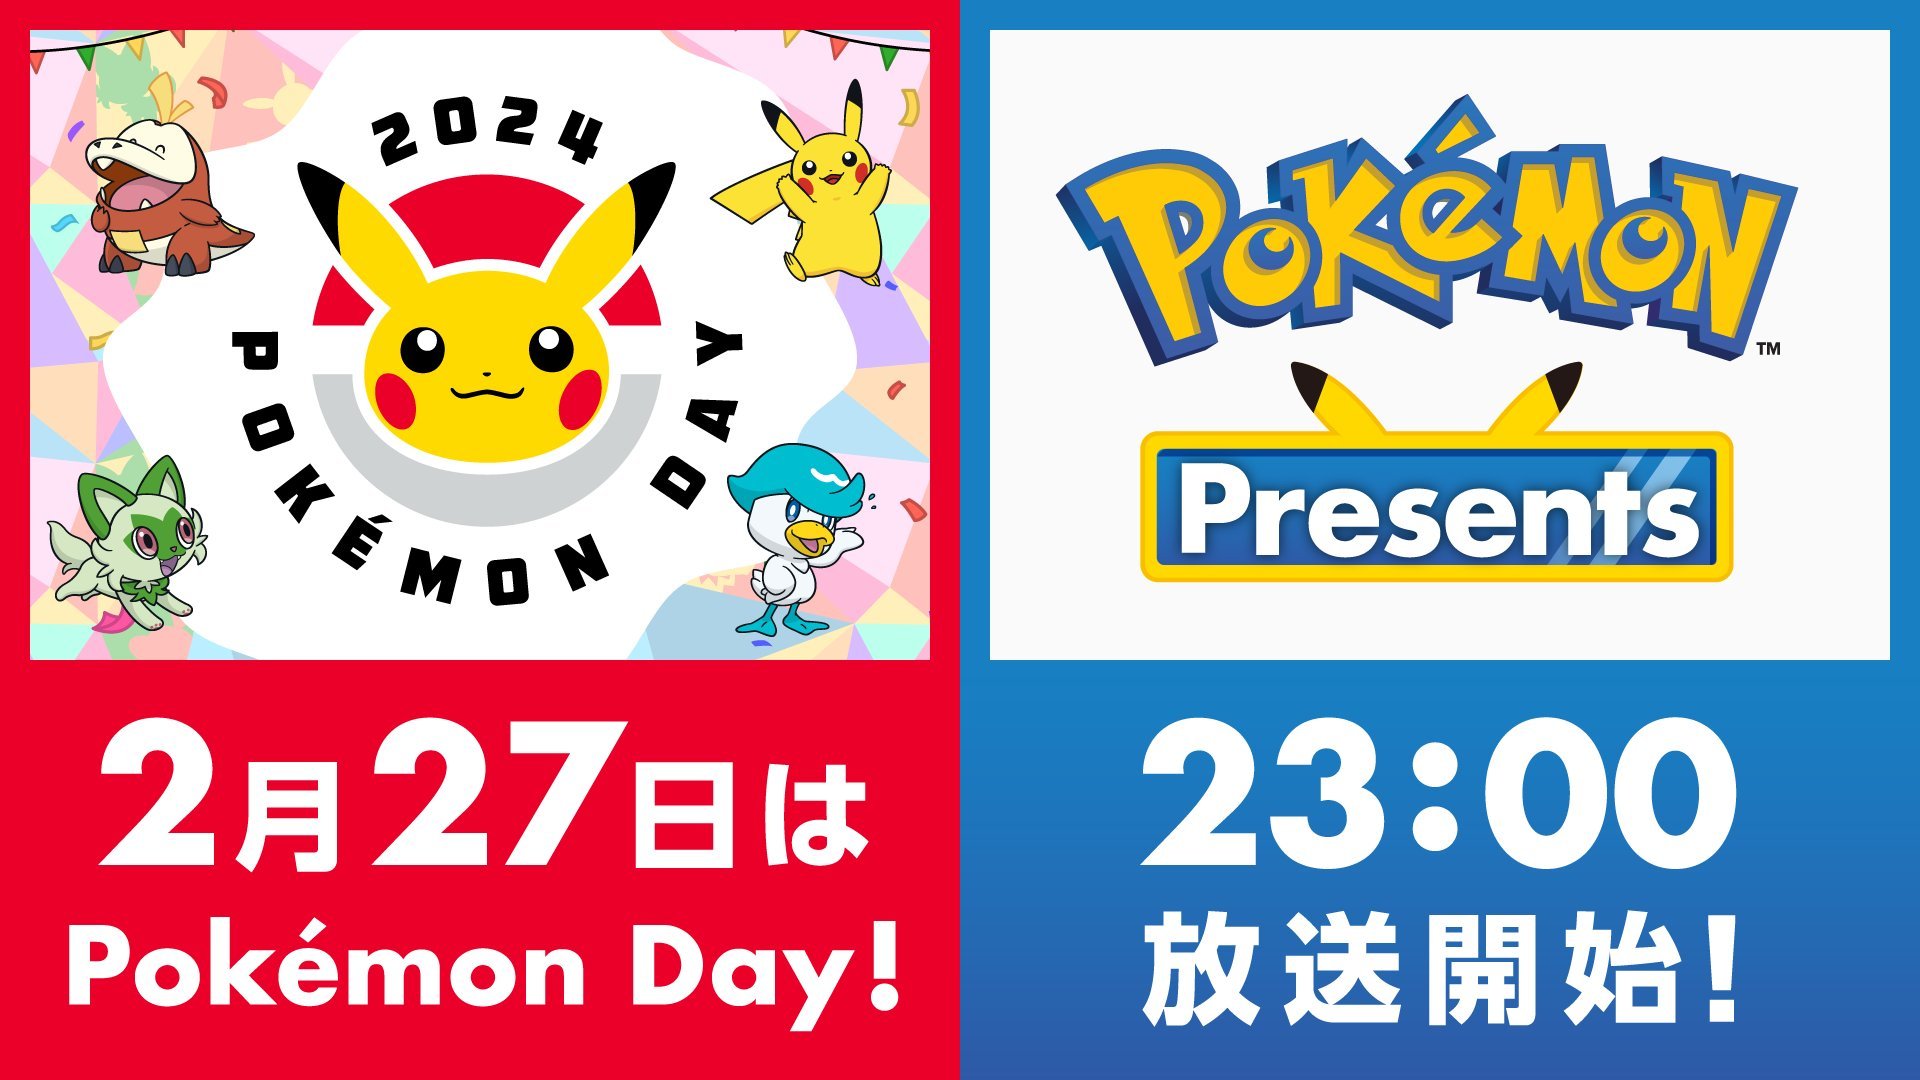 #Pokémon Presents zum Pokémon Day angekündigt: Fans spekulieren, was uns erwarten könnte